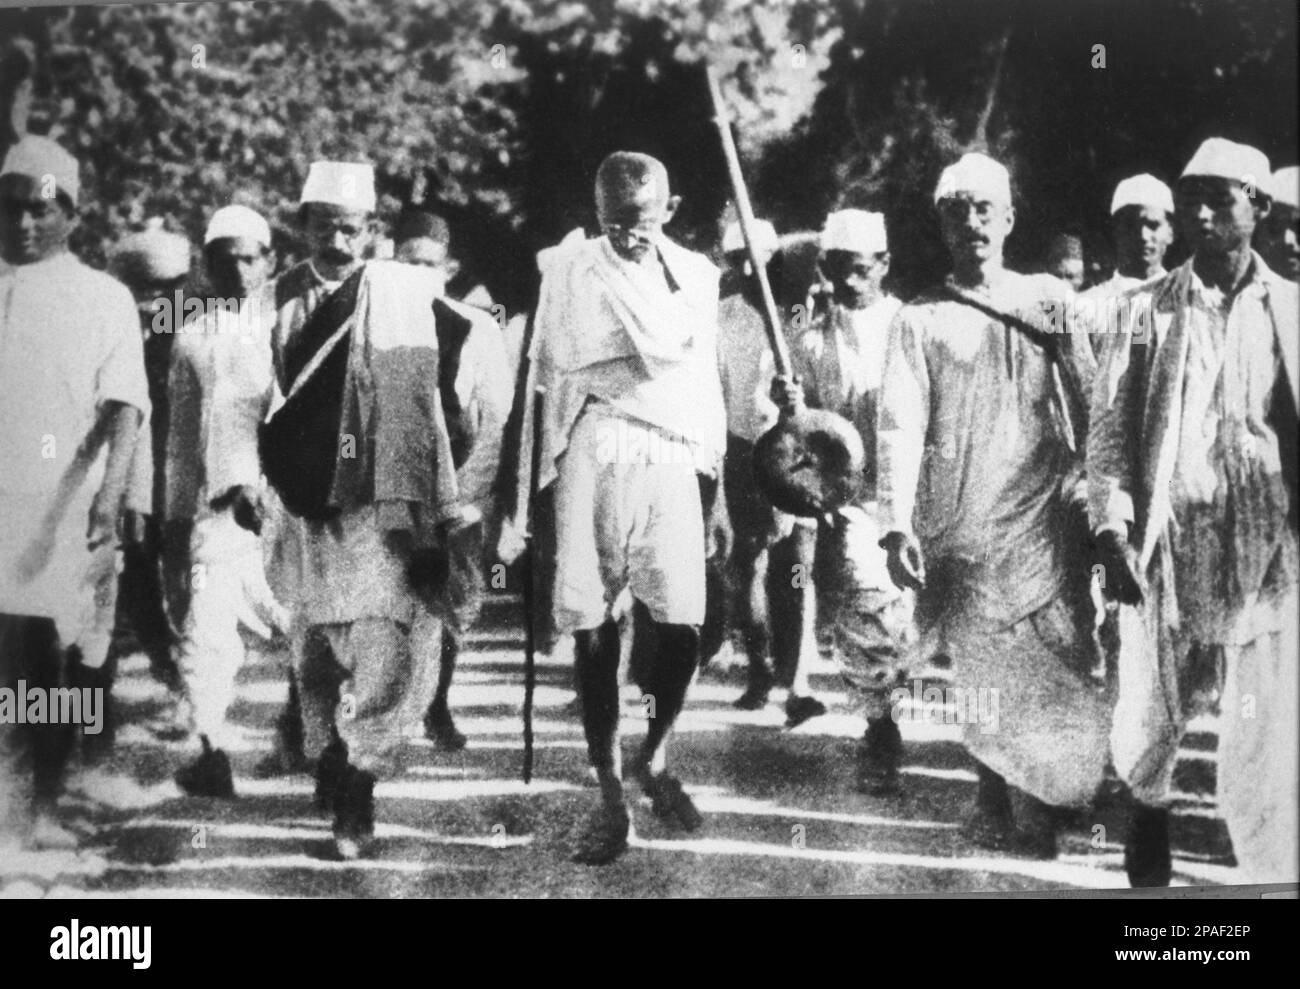 1930 : il leader pacifista indiano MAHATMA GANDHI ( Mohandas Karamchand Gandhi , 1869 - 1948 ) è stato un leader politico e spirituale importante dell'India e del movimento indiano per l'indipendenza. Gandhi durante la marcia del sale, 1930 marzo - POLITICO - POLITICA - POLITICA - PACIFISMO - PACIFISTA - PACIFISTA - PACIFISMO - INDIA ---- ARCHIVIO GBB Foto Stock